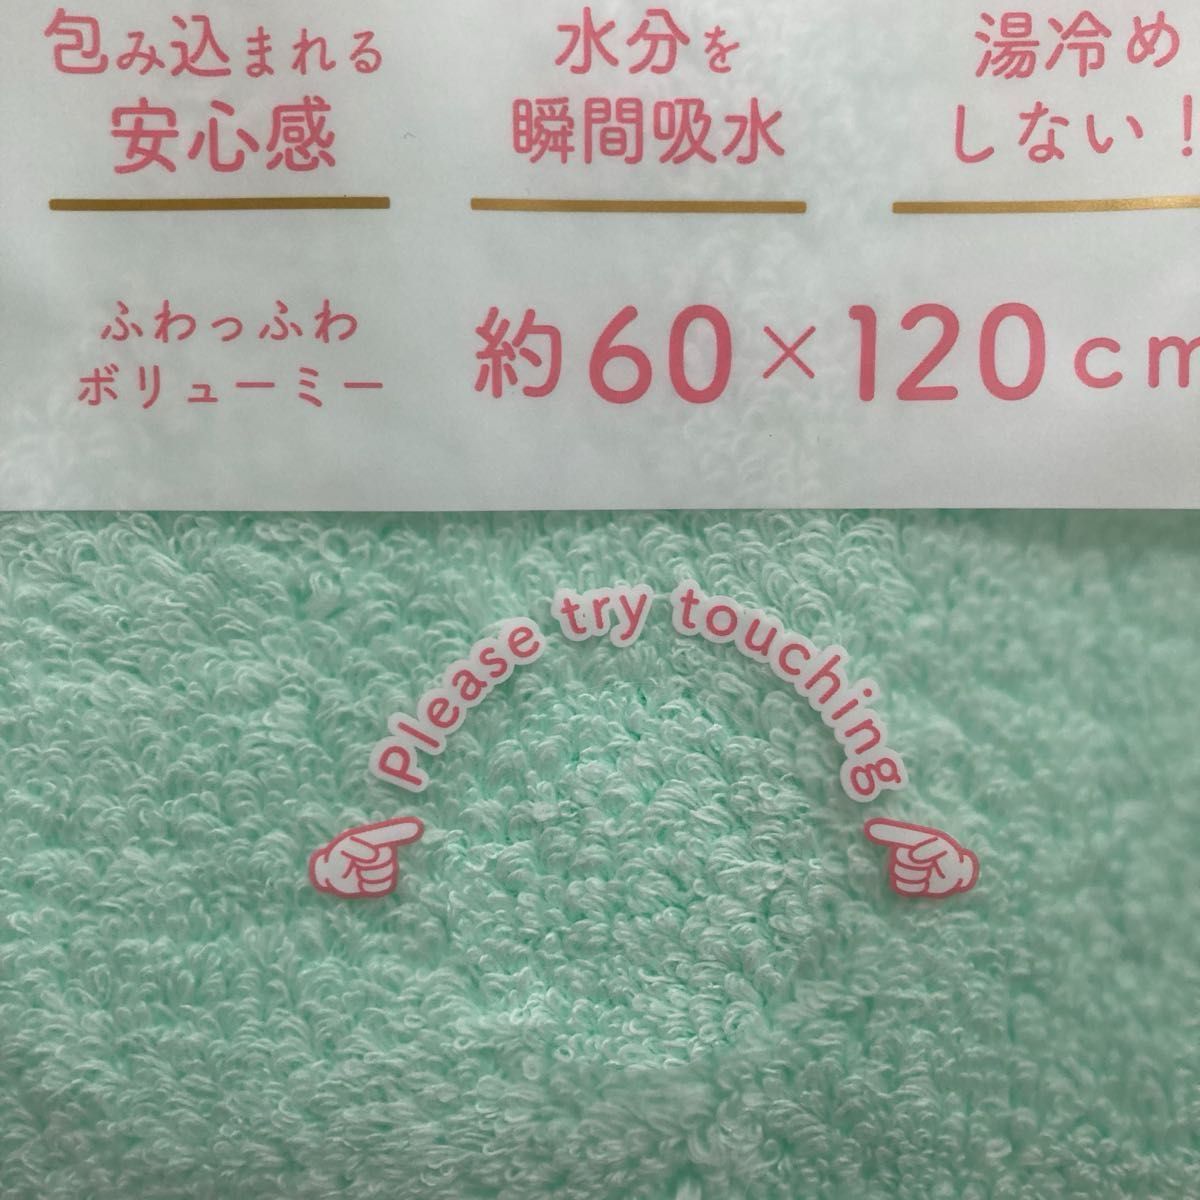 『バスタオル大好き宣言』本多タオル/バスタオル 日本製  約120×60cm  